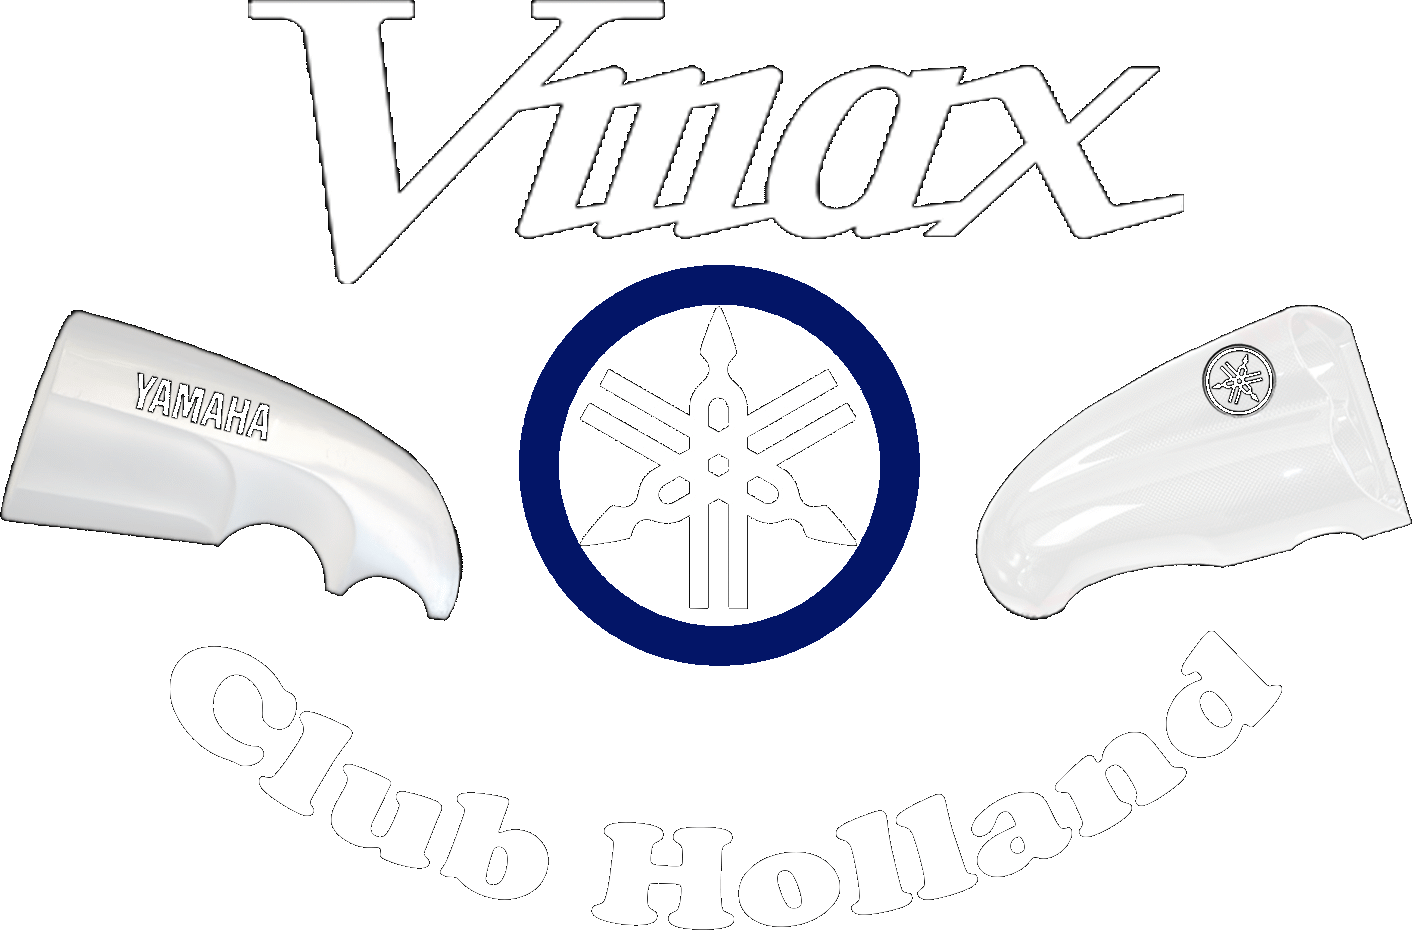 Vmax Club Holland